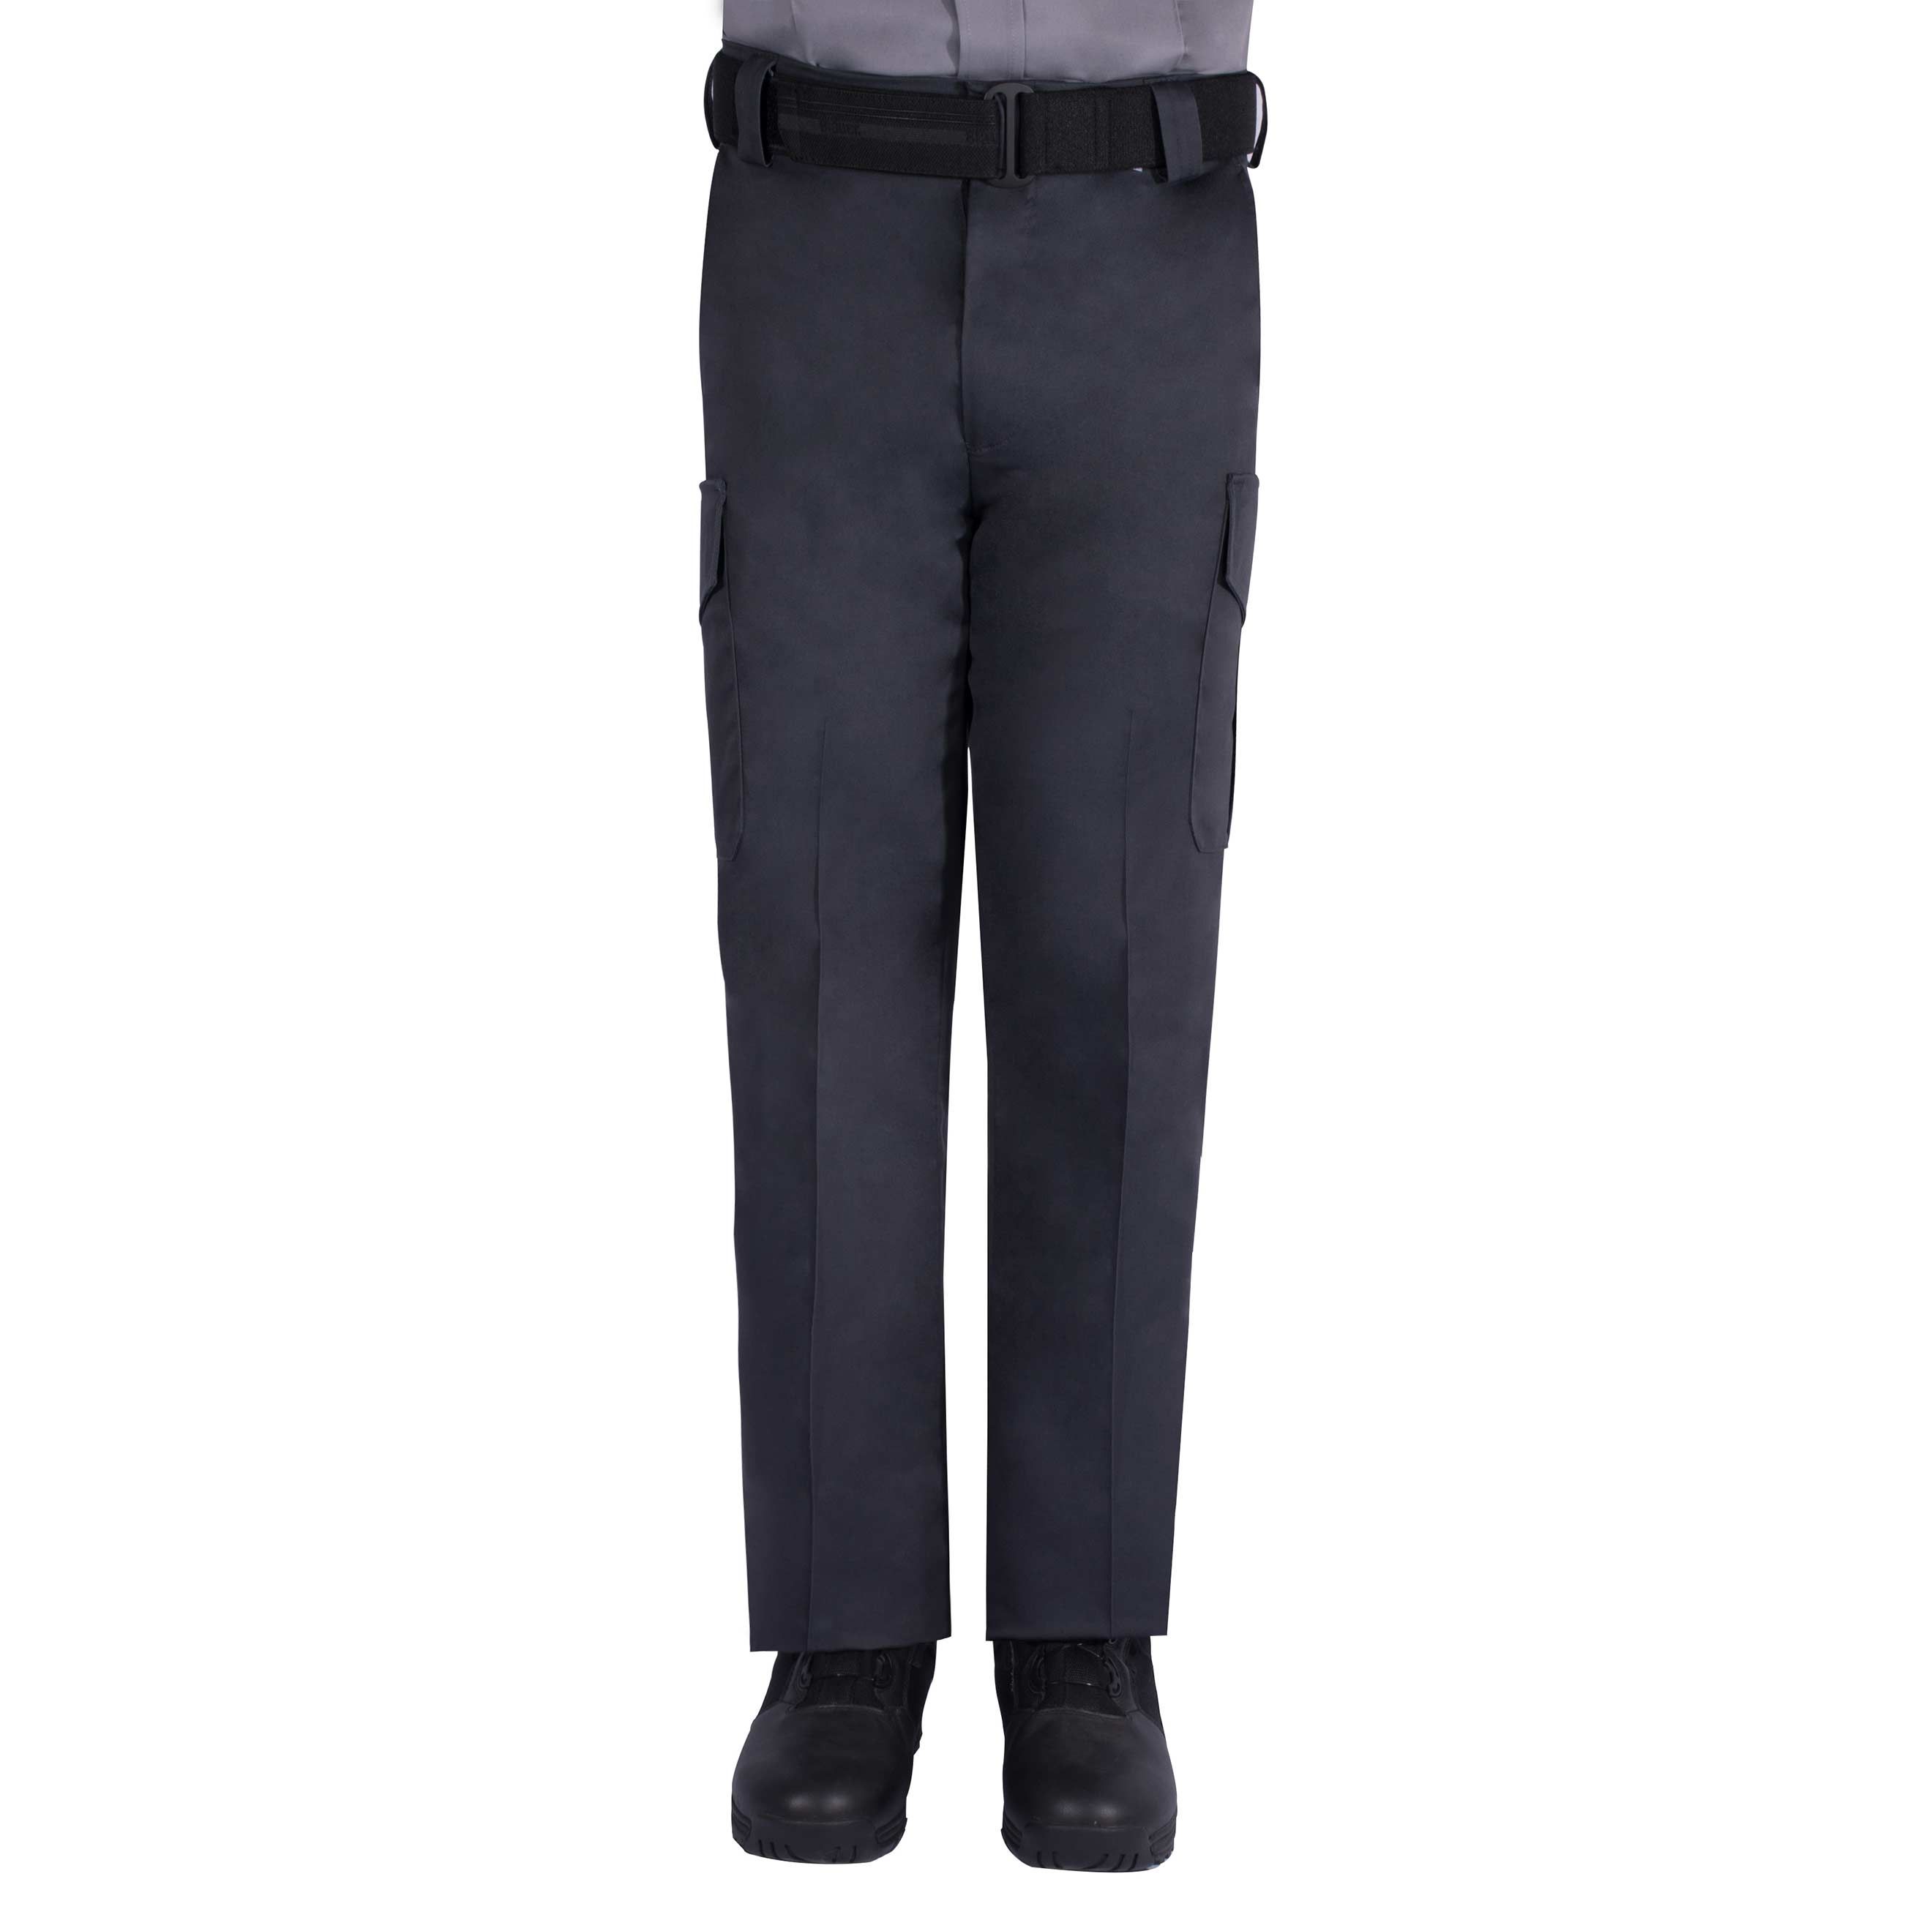 Tactical Uniform Pants - Side-Pocket Cotton Pants - 8810 - Blauer